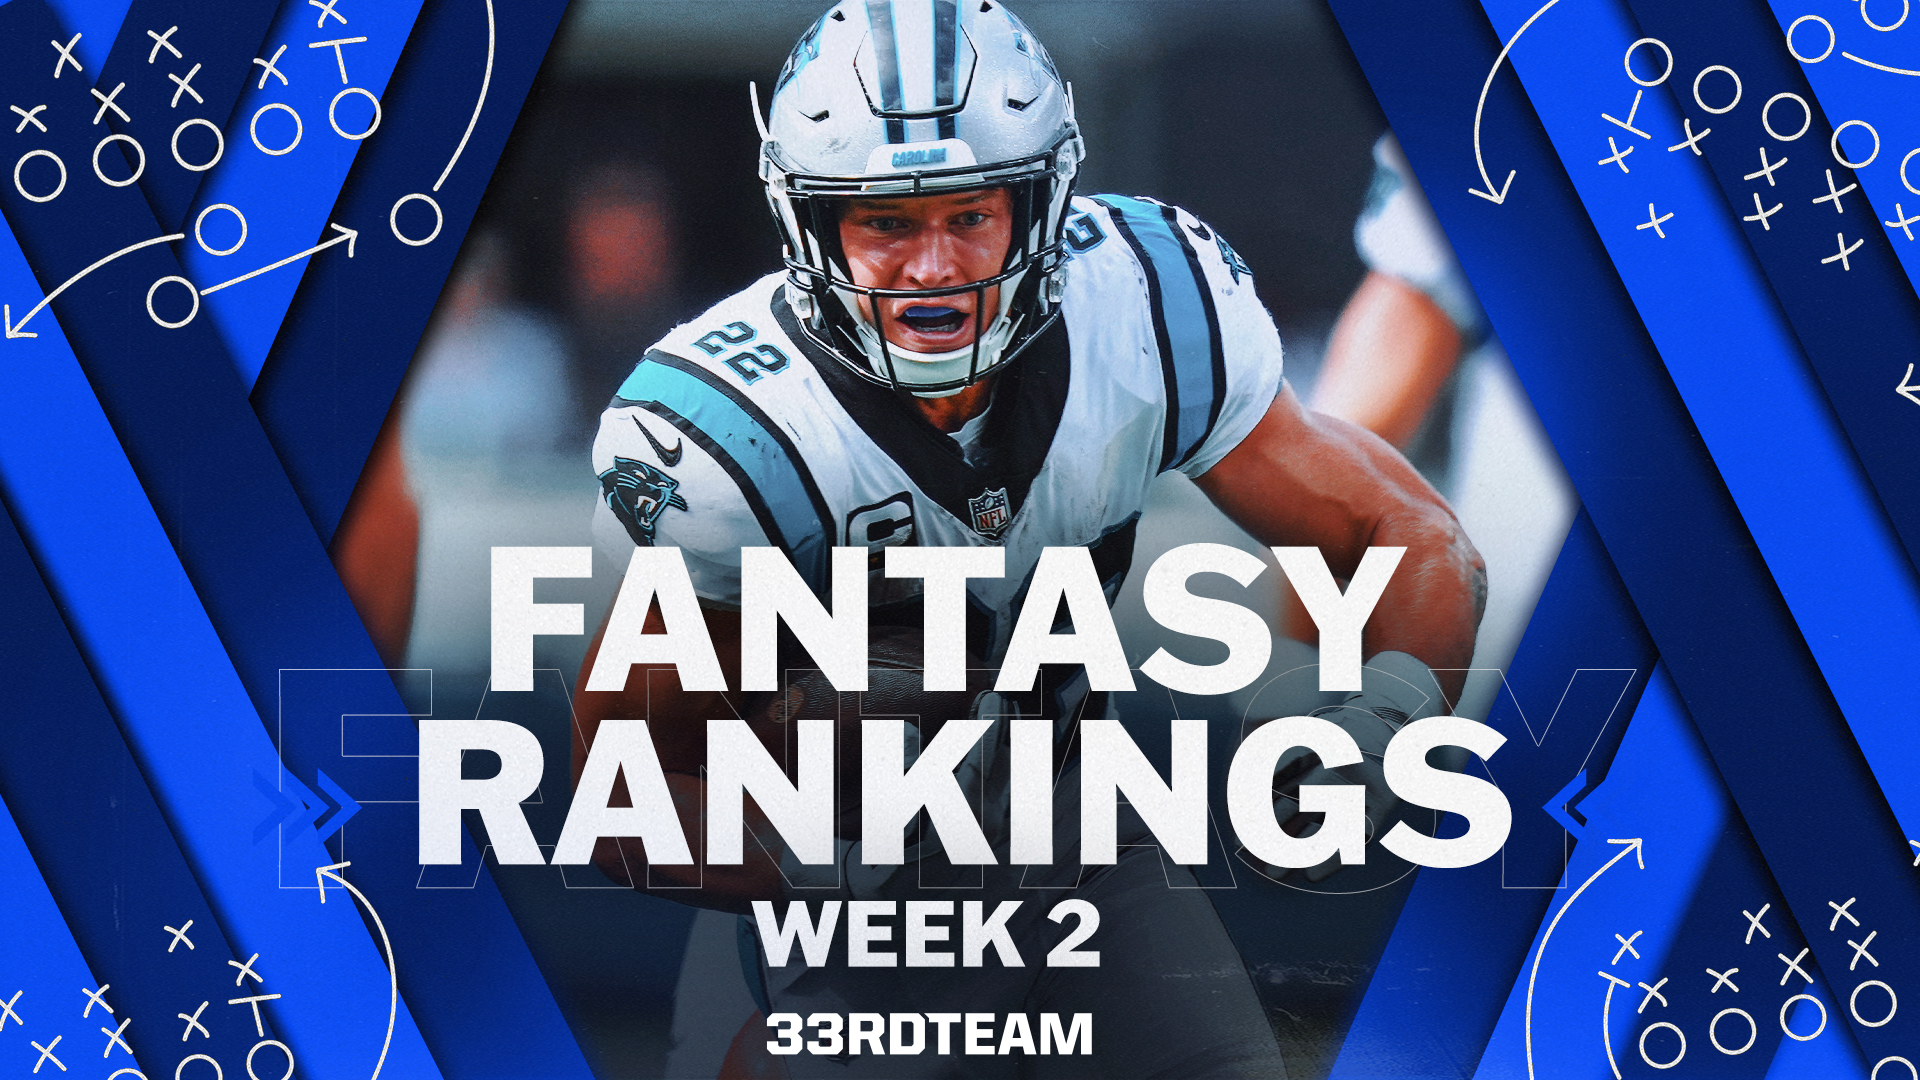 nfl rankings week 2 fantasy